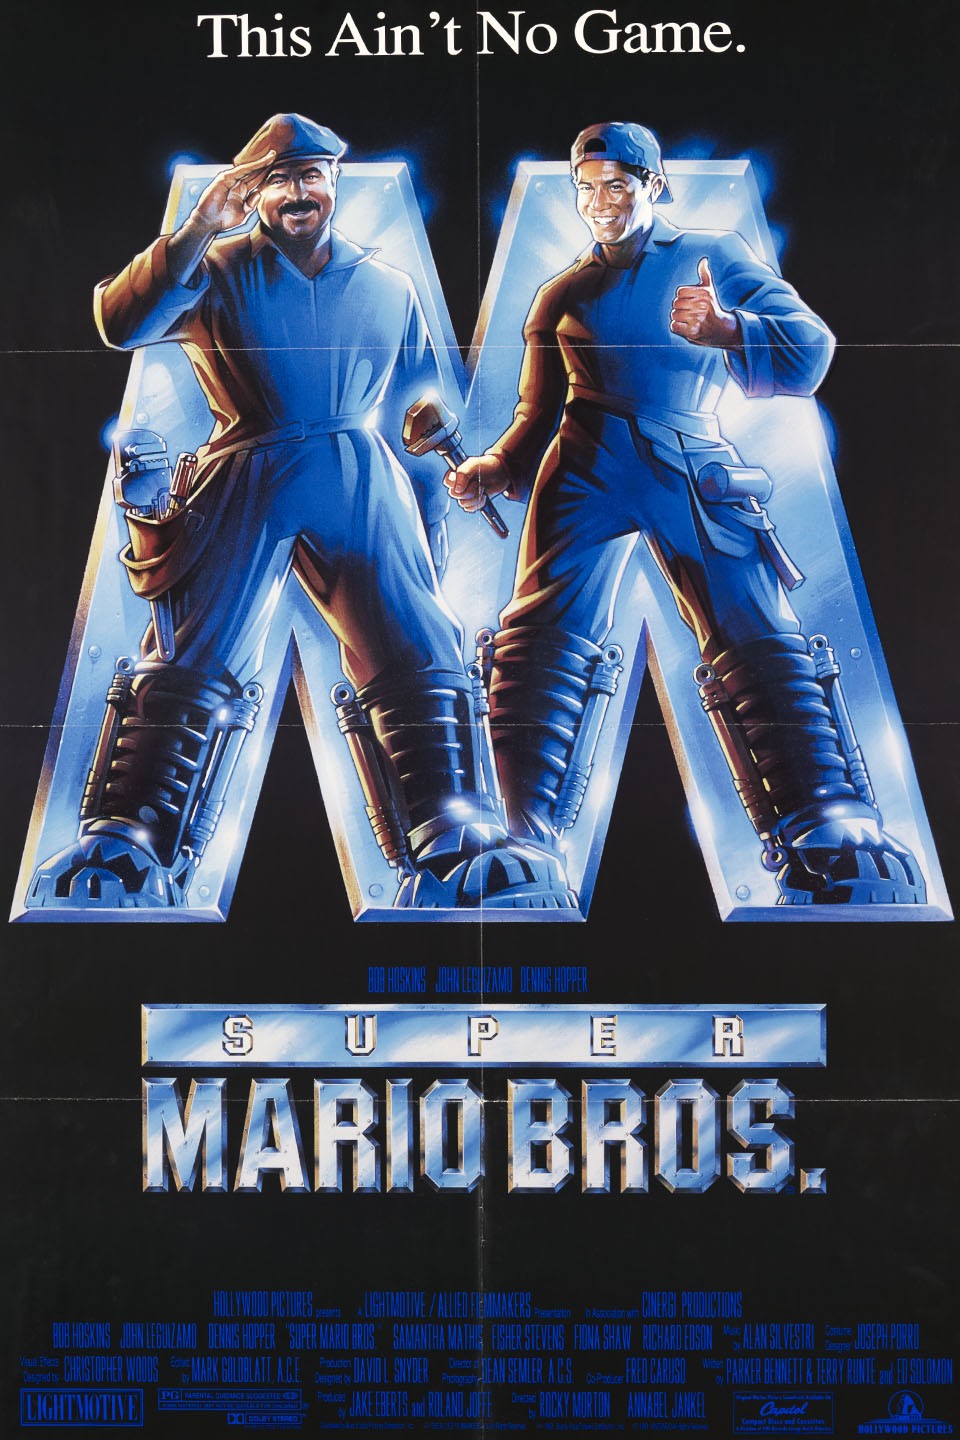 Super Mario: Trailer do filme estreia hoje (6); saiba como assistir